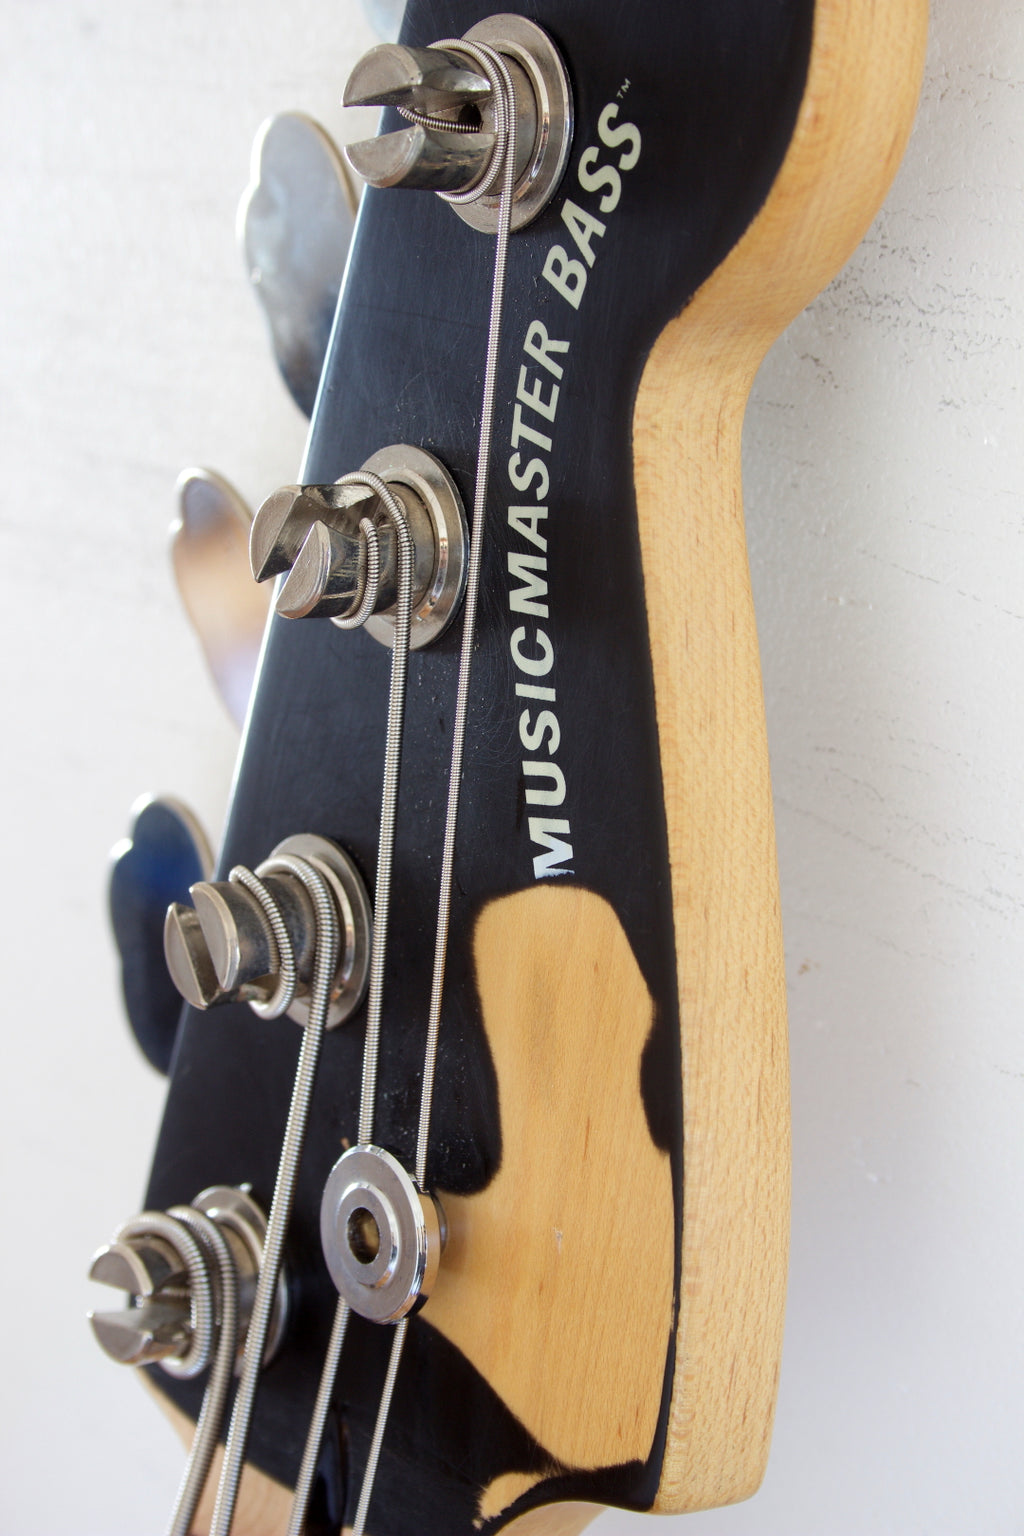 Squier Vista Series Musicmaster Bass Black 1997